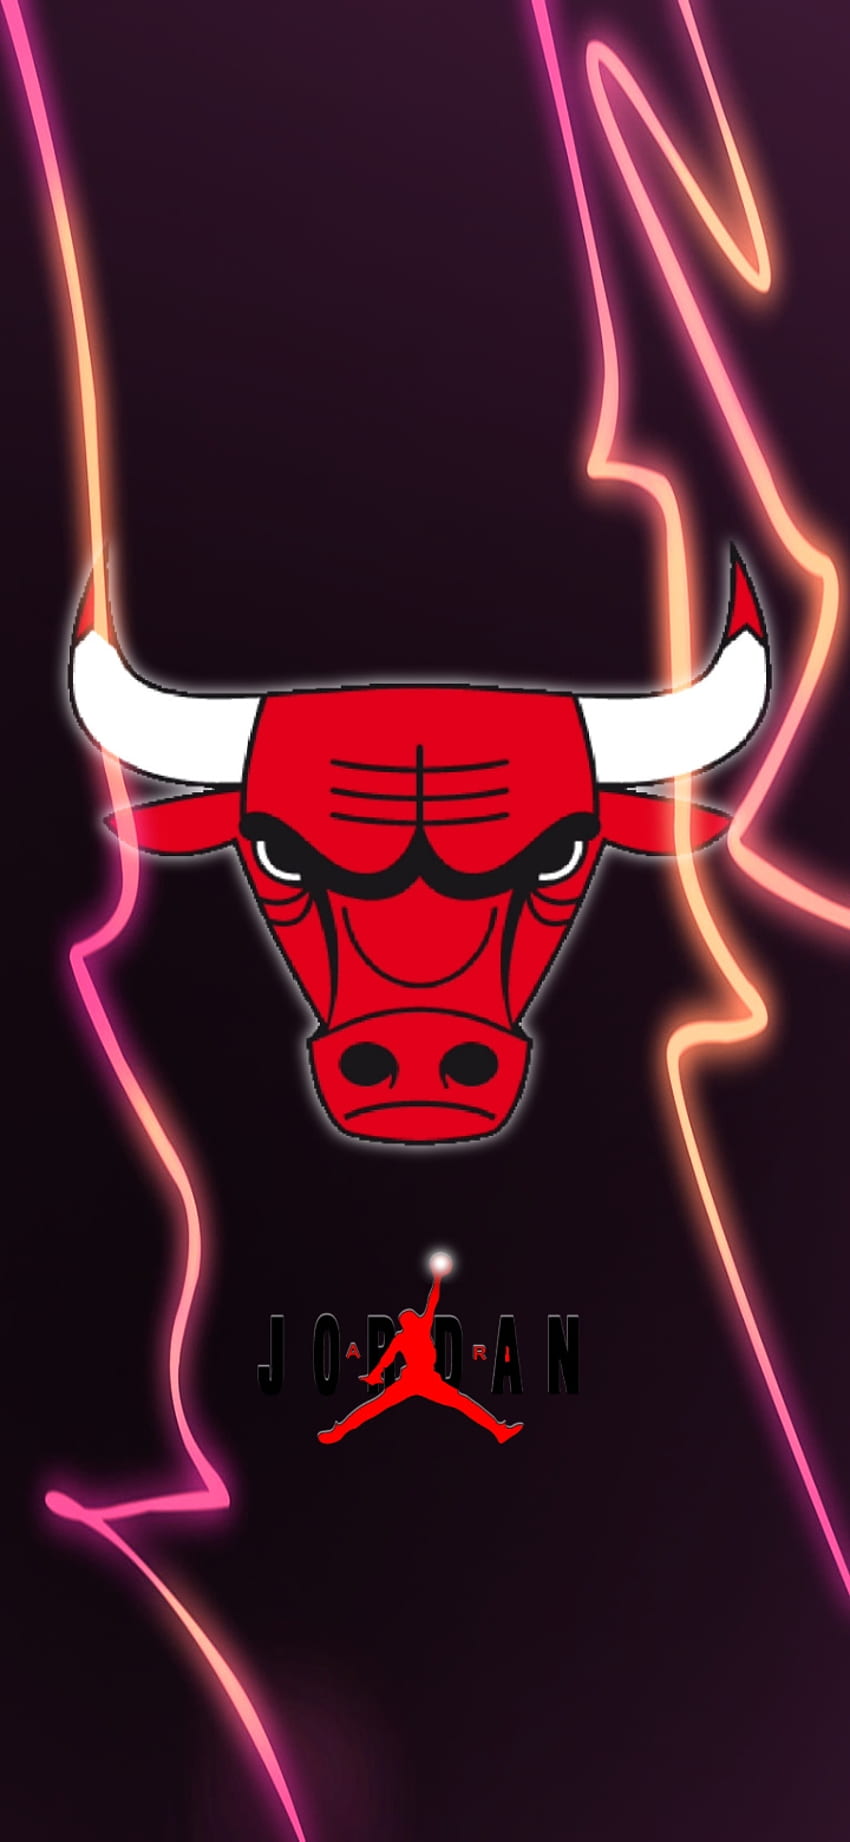 Chicago bulls, organ, red, buffalo, jordan, Air, Basketball, Michael Jordan, sport HD phone wallpaper